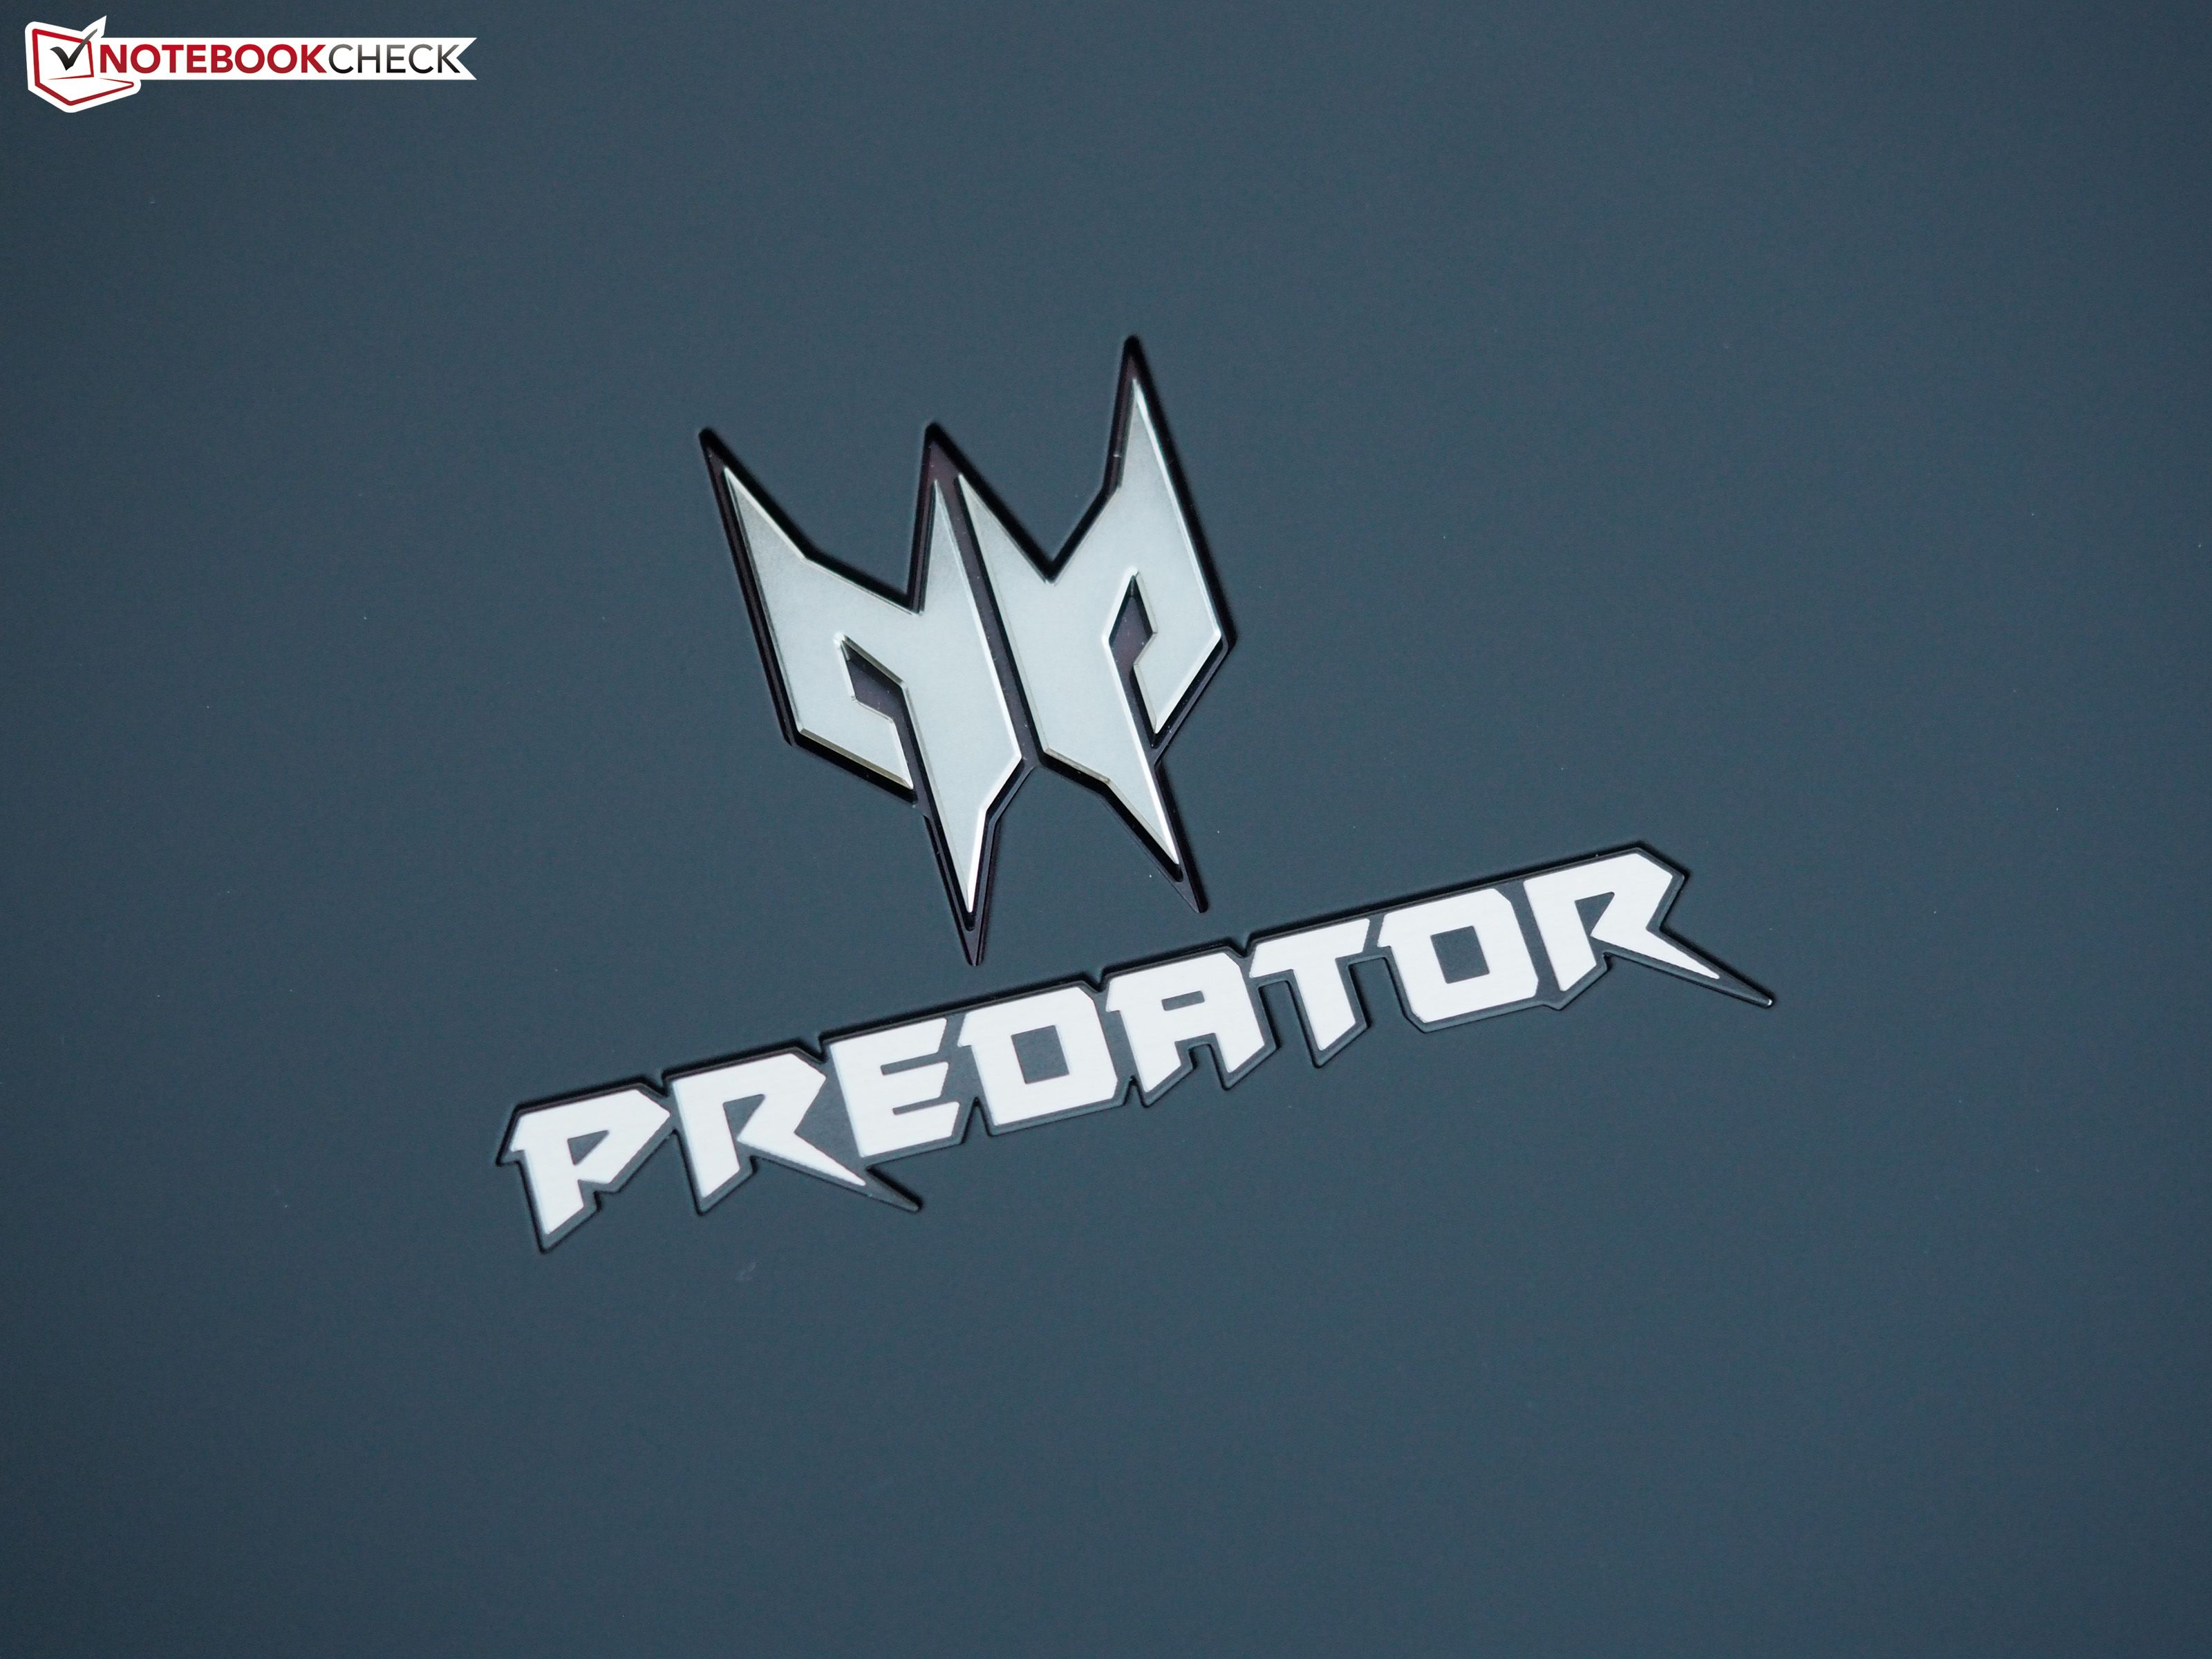 Acer Predator Wallpaper. Alien vs